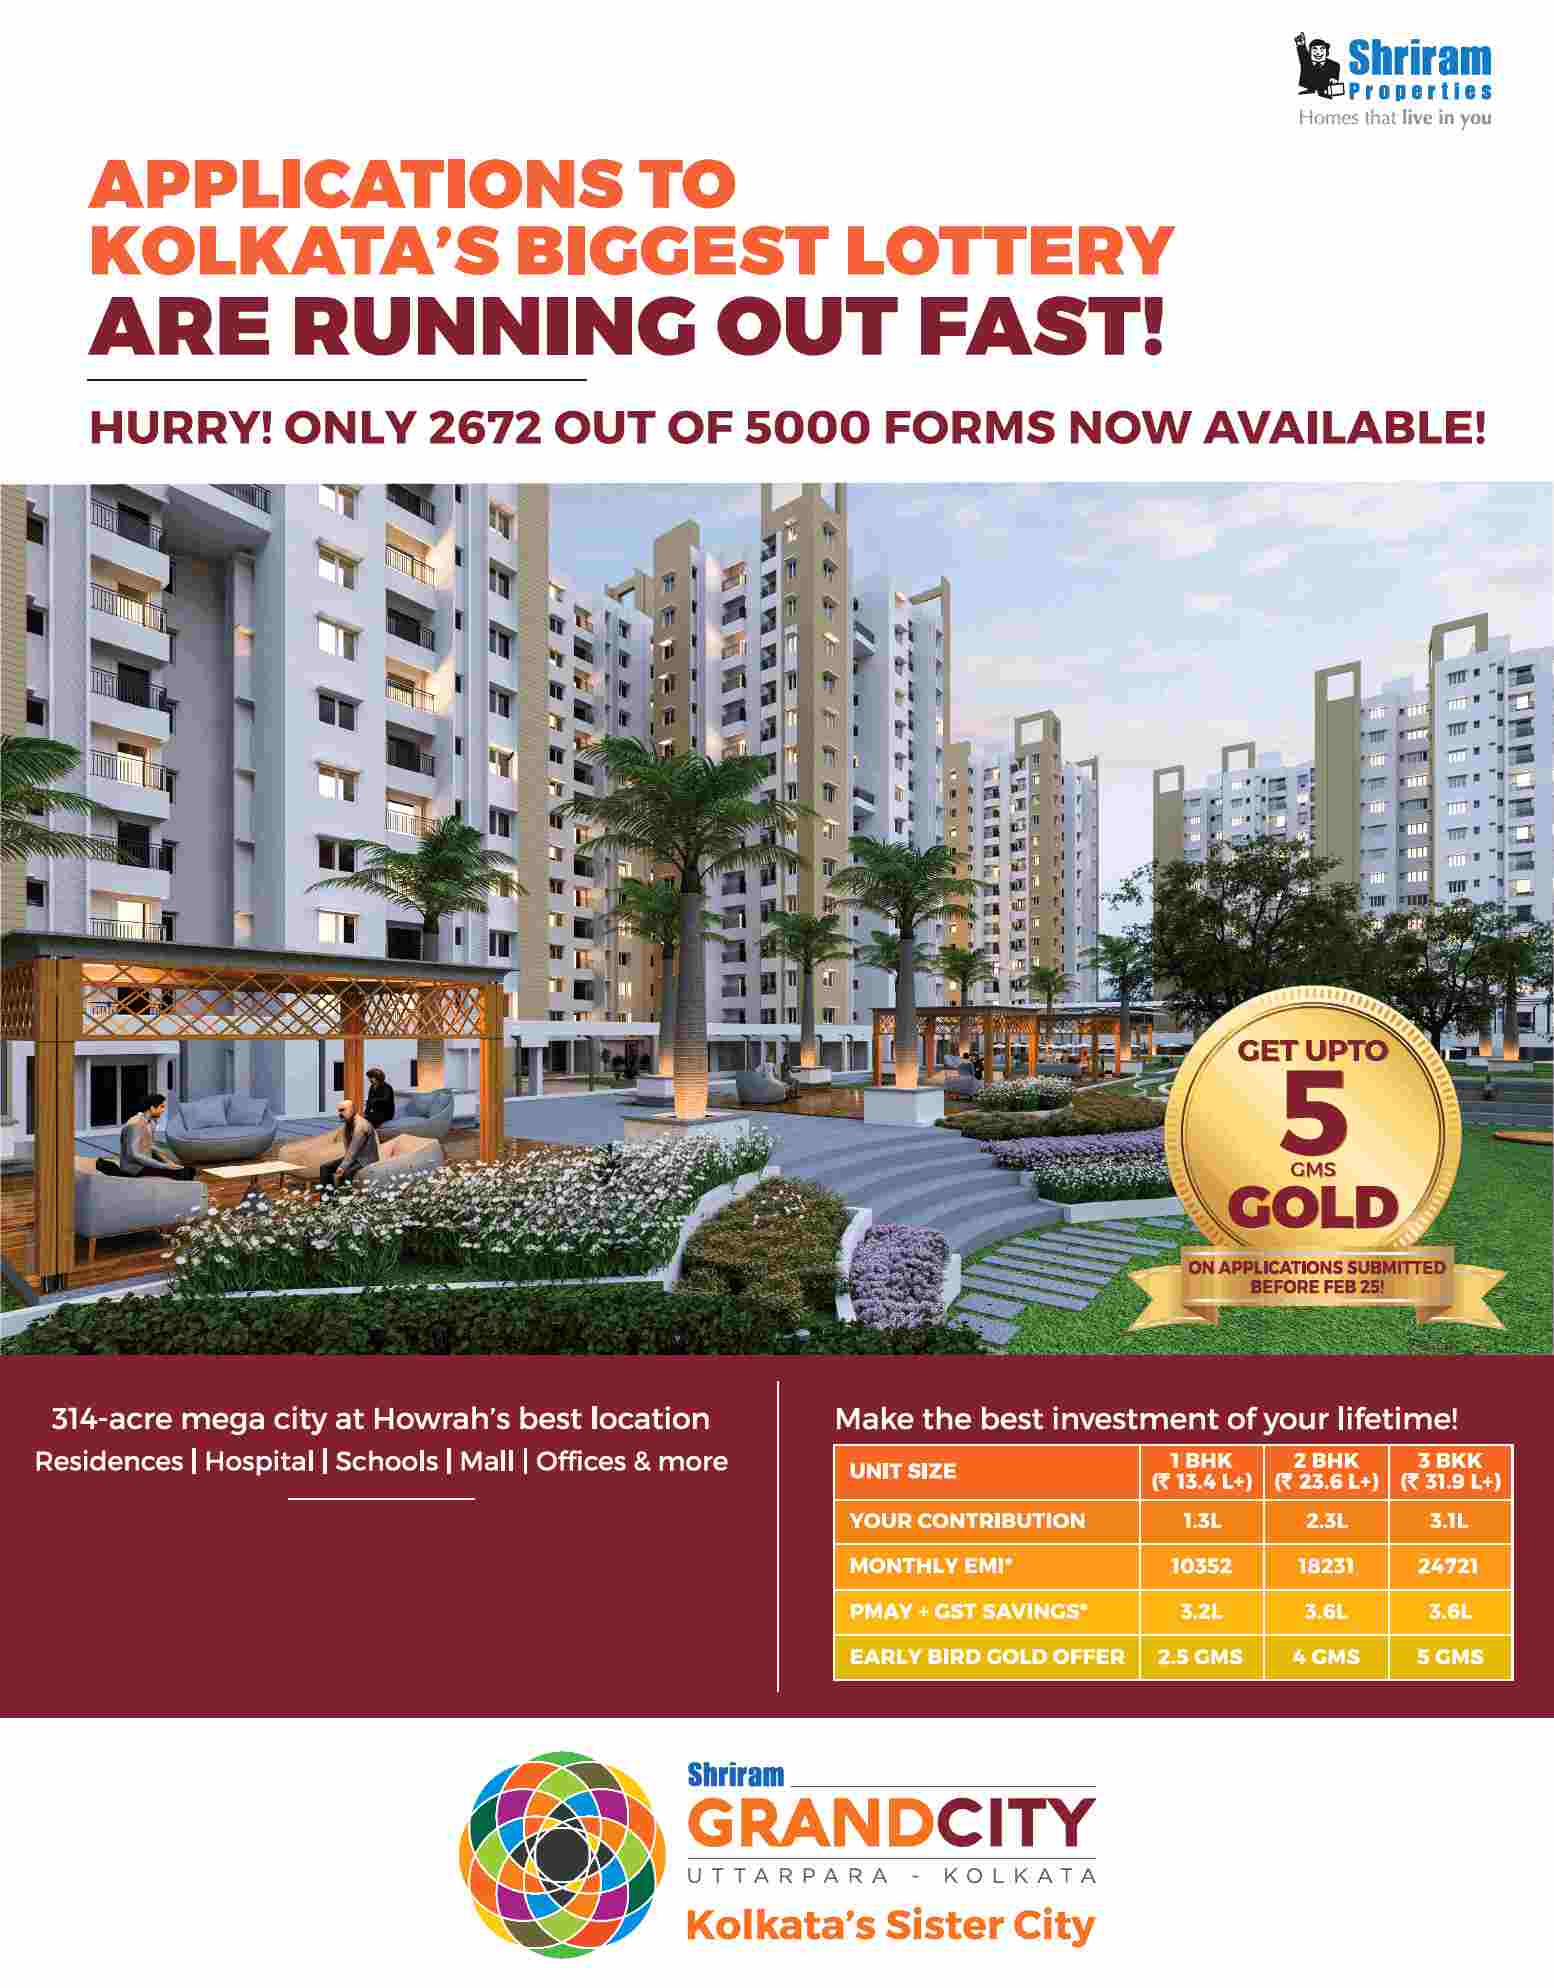 Make the best investment of your lifetime at Shriram Grand City in Kolkata